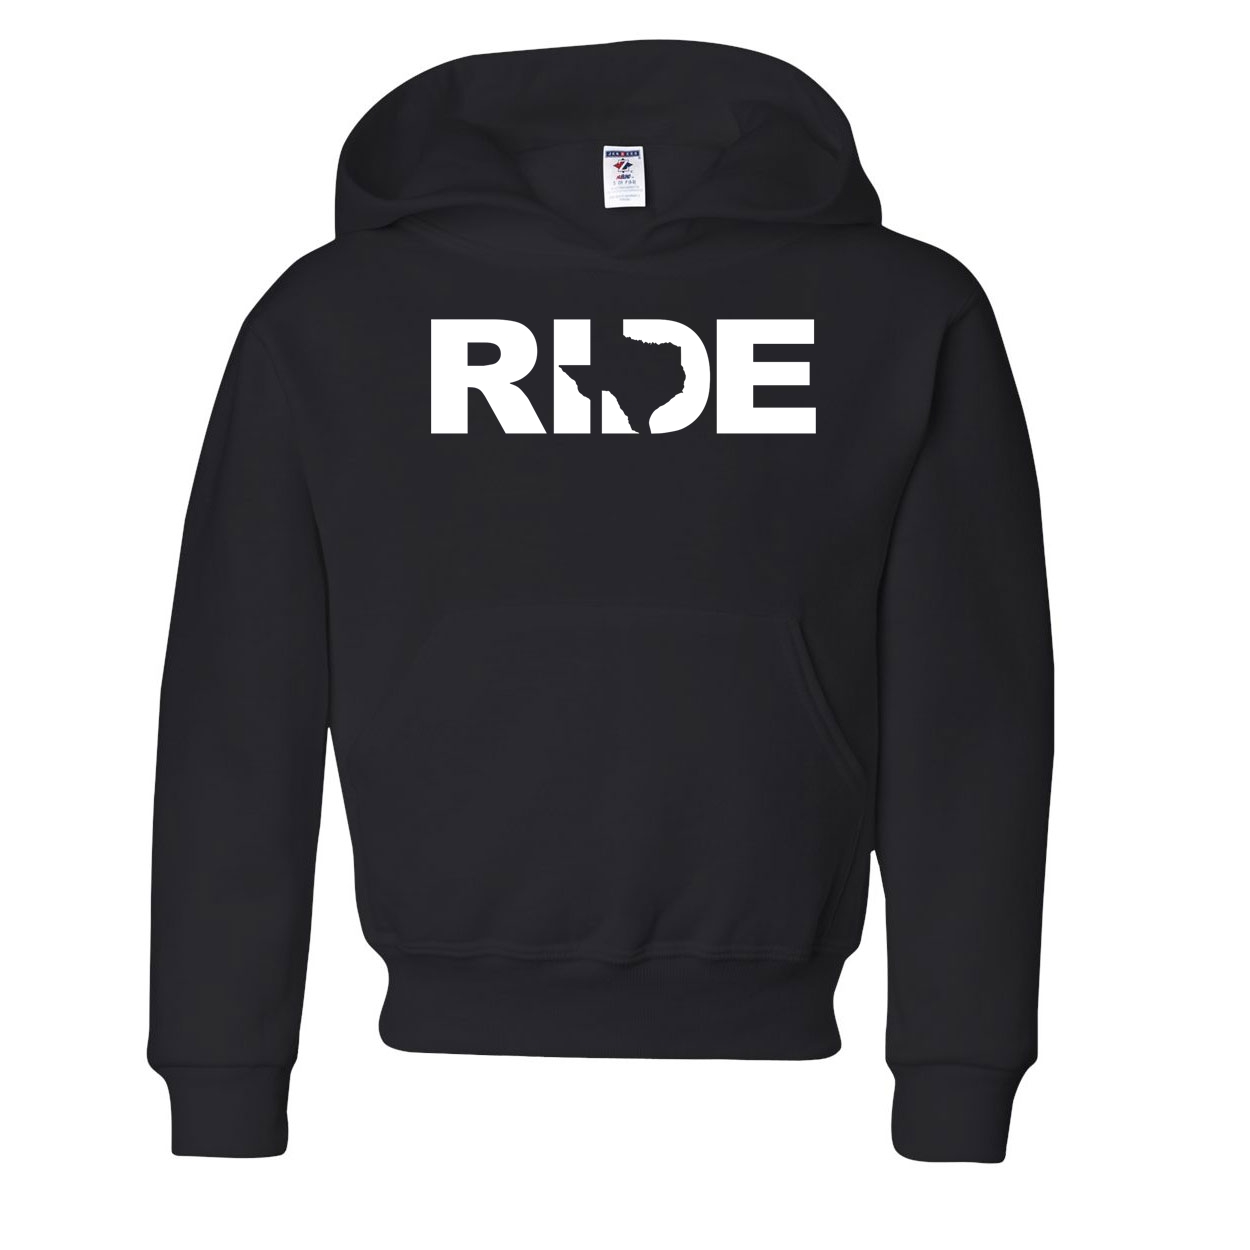 Ride Texas Classic Youth Sweatshirt Black (White Logo)